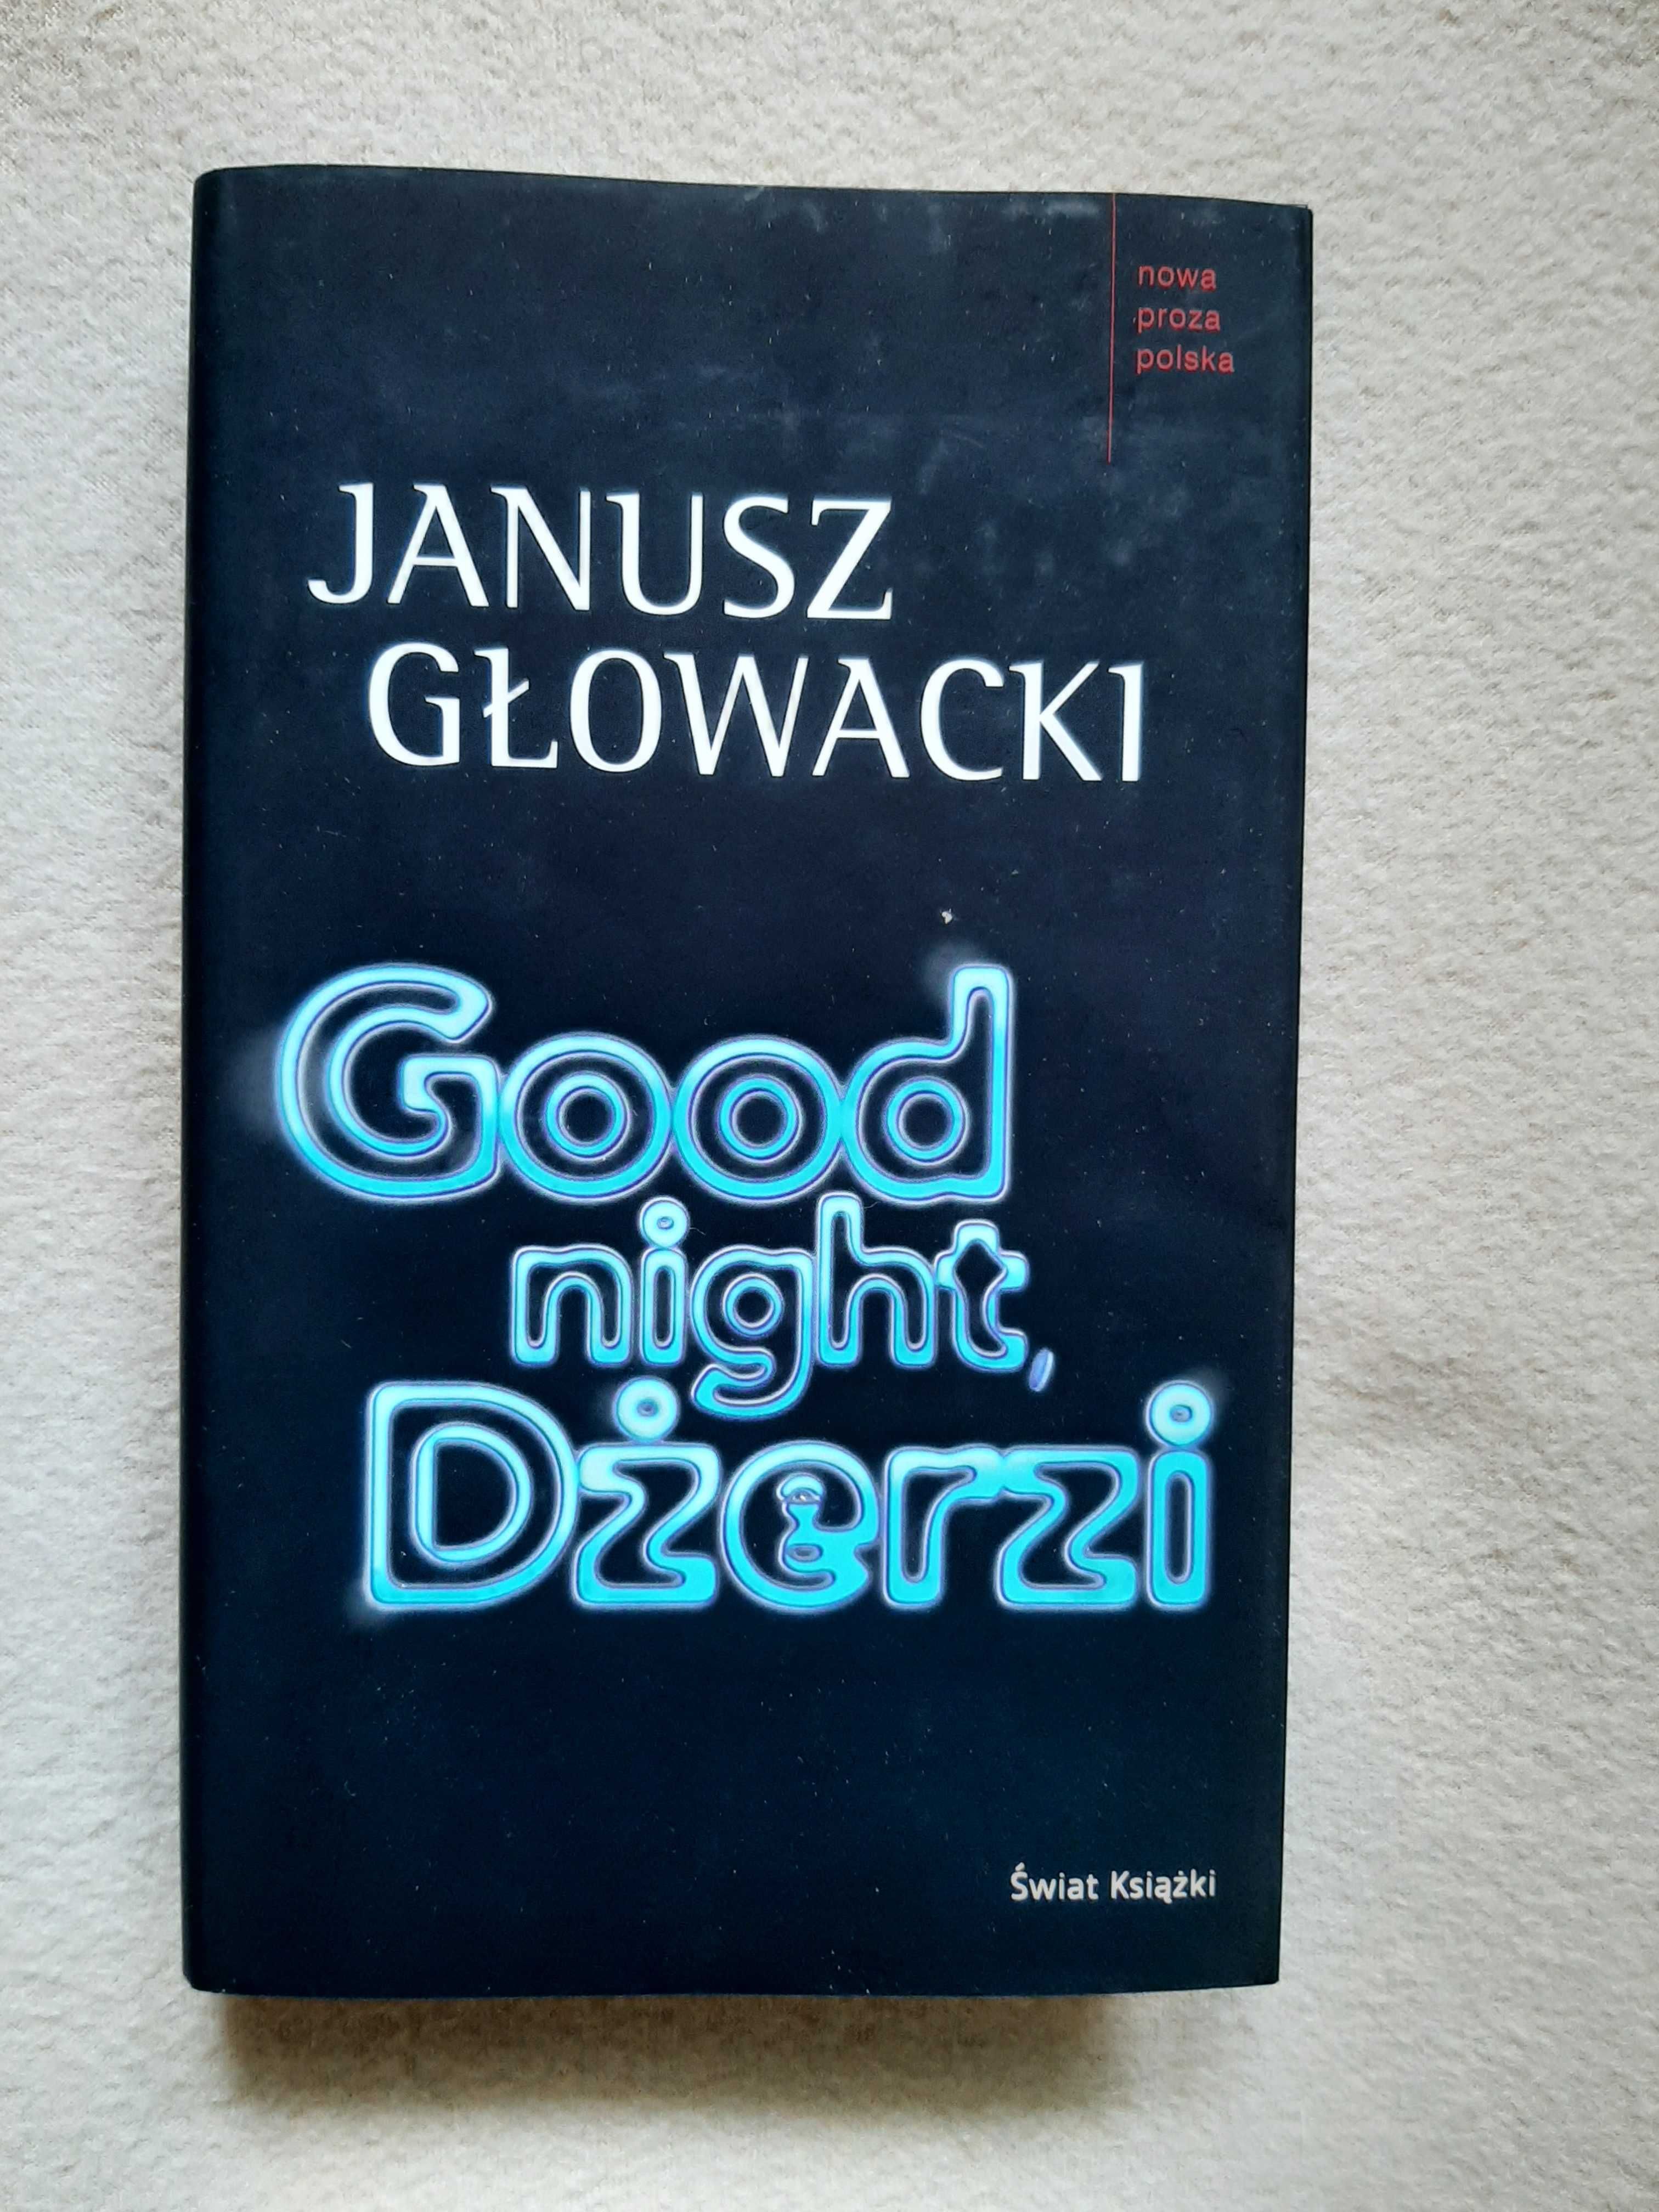 Good Night, Dżerzi  Janusz Głowacki